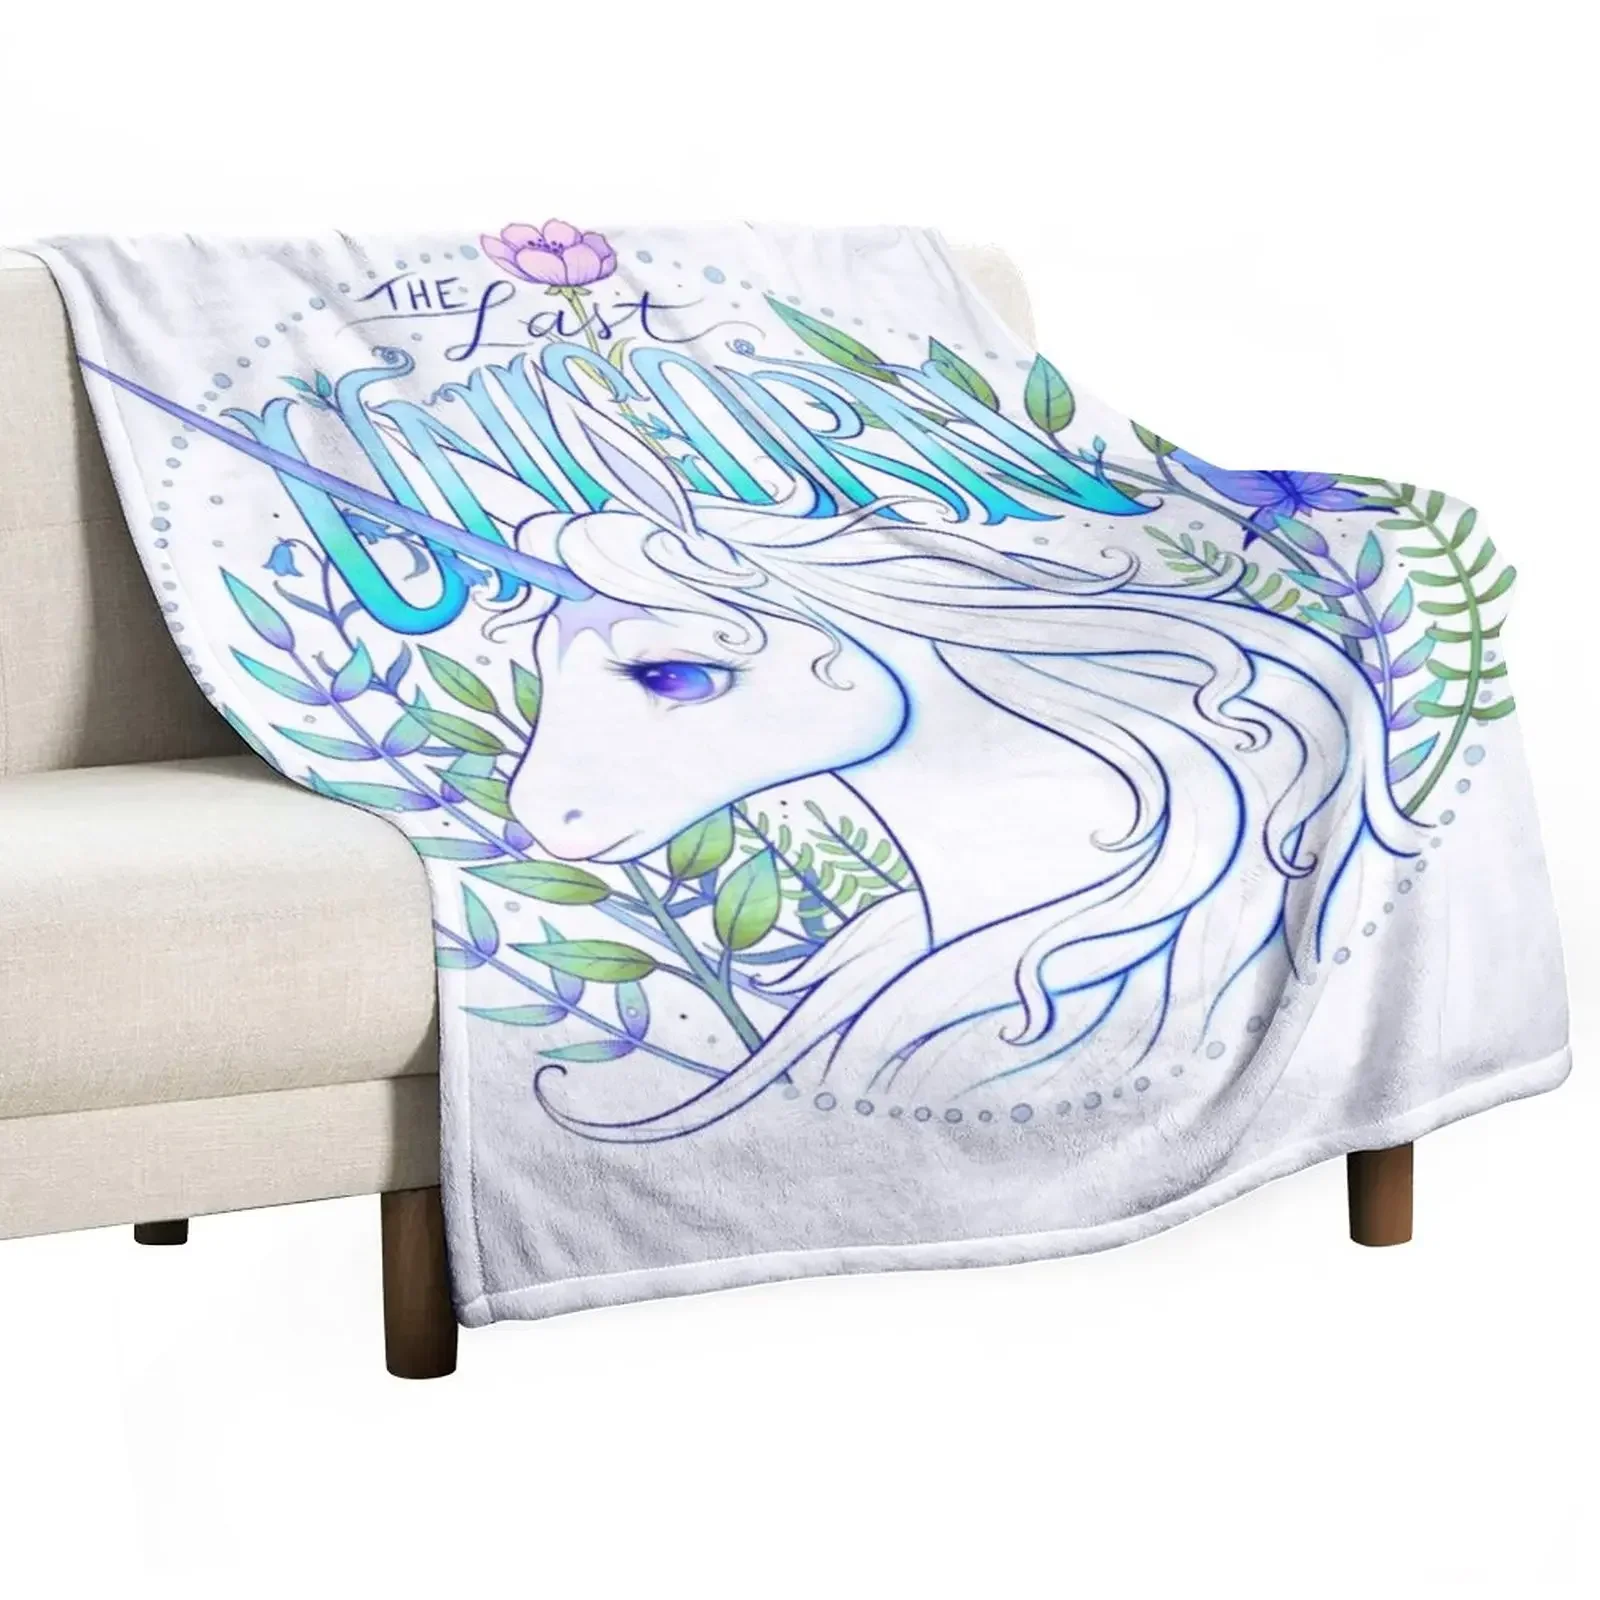 

The Last Unicorn Throw Blanket Luxury Designer Blankets For Sofas Soft Plush Plaid Summer Beddings Blankets